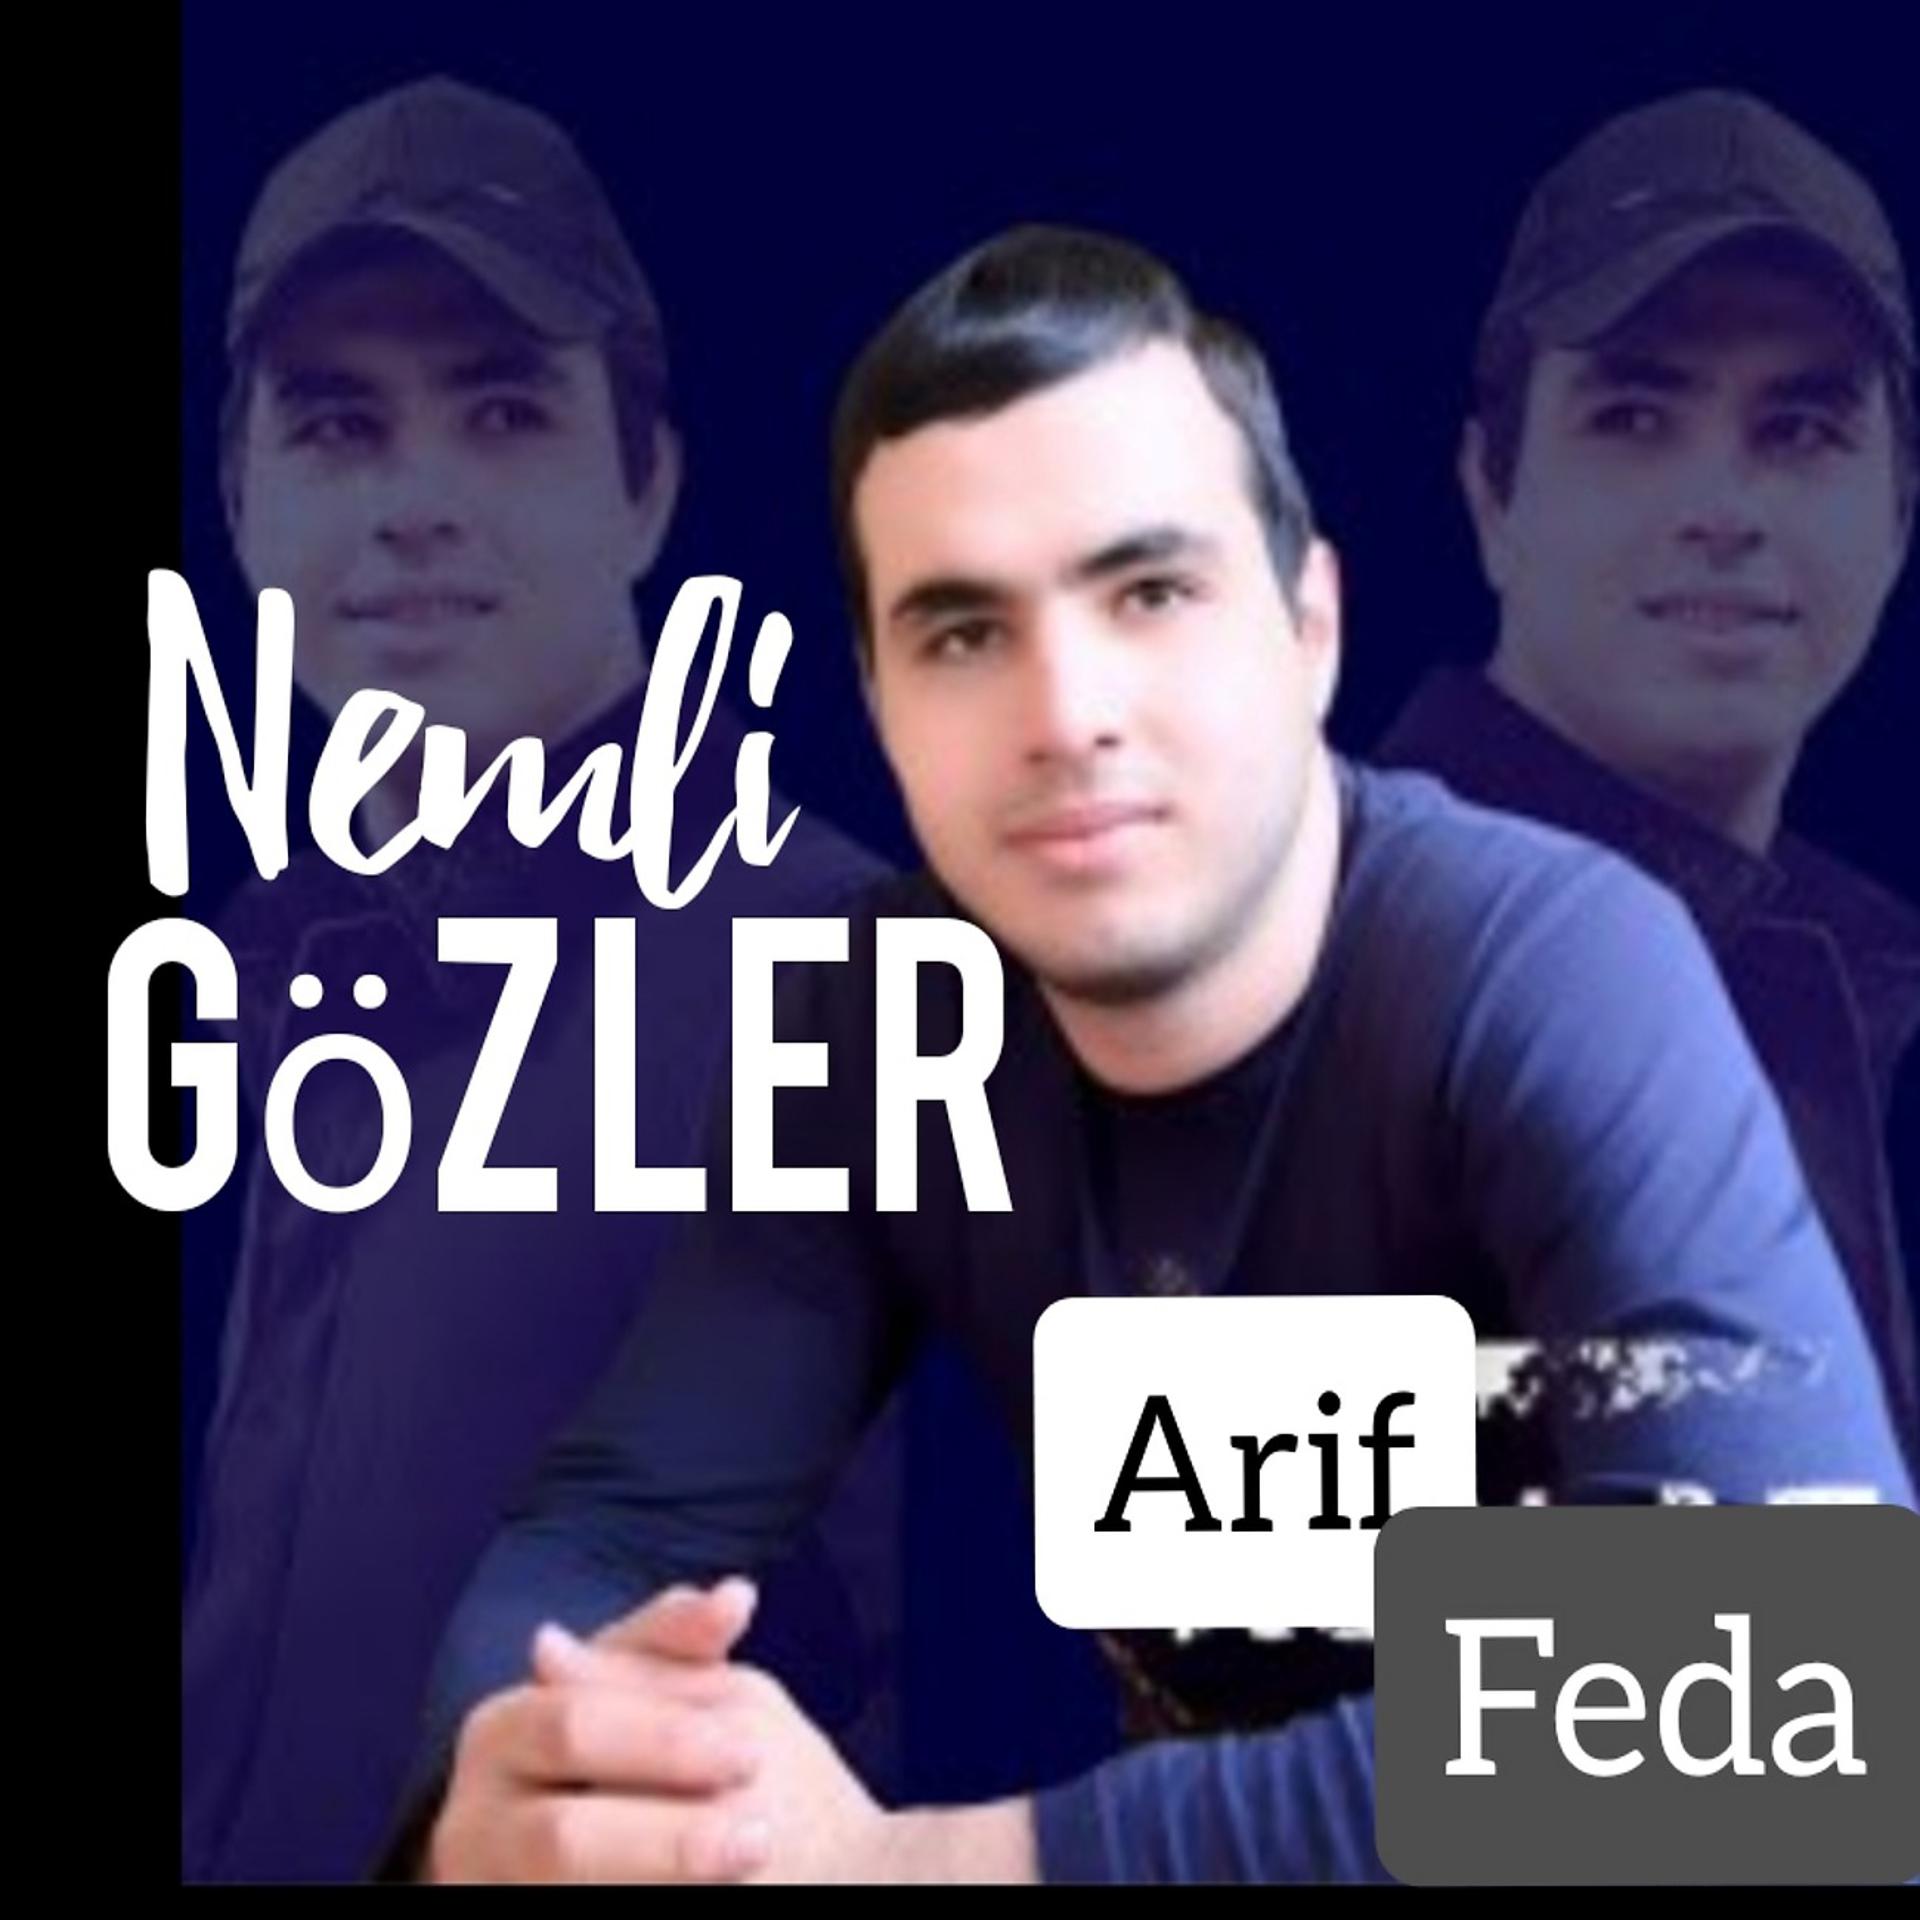 Постер альбома Nemli Gözler